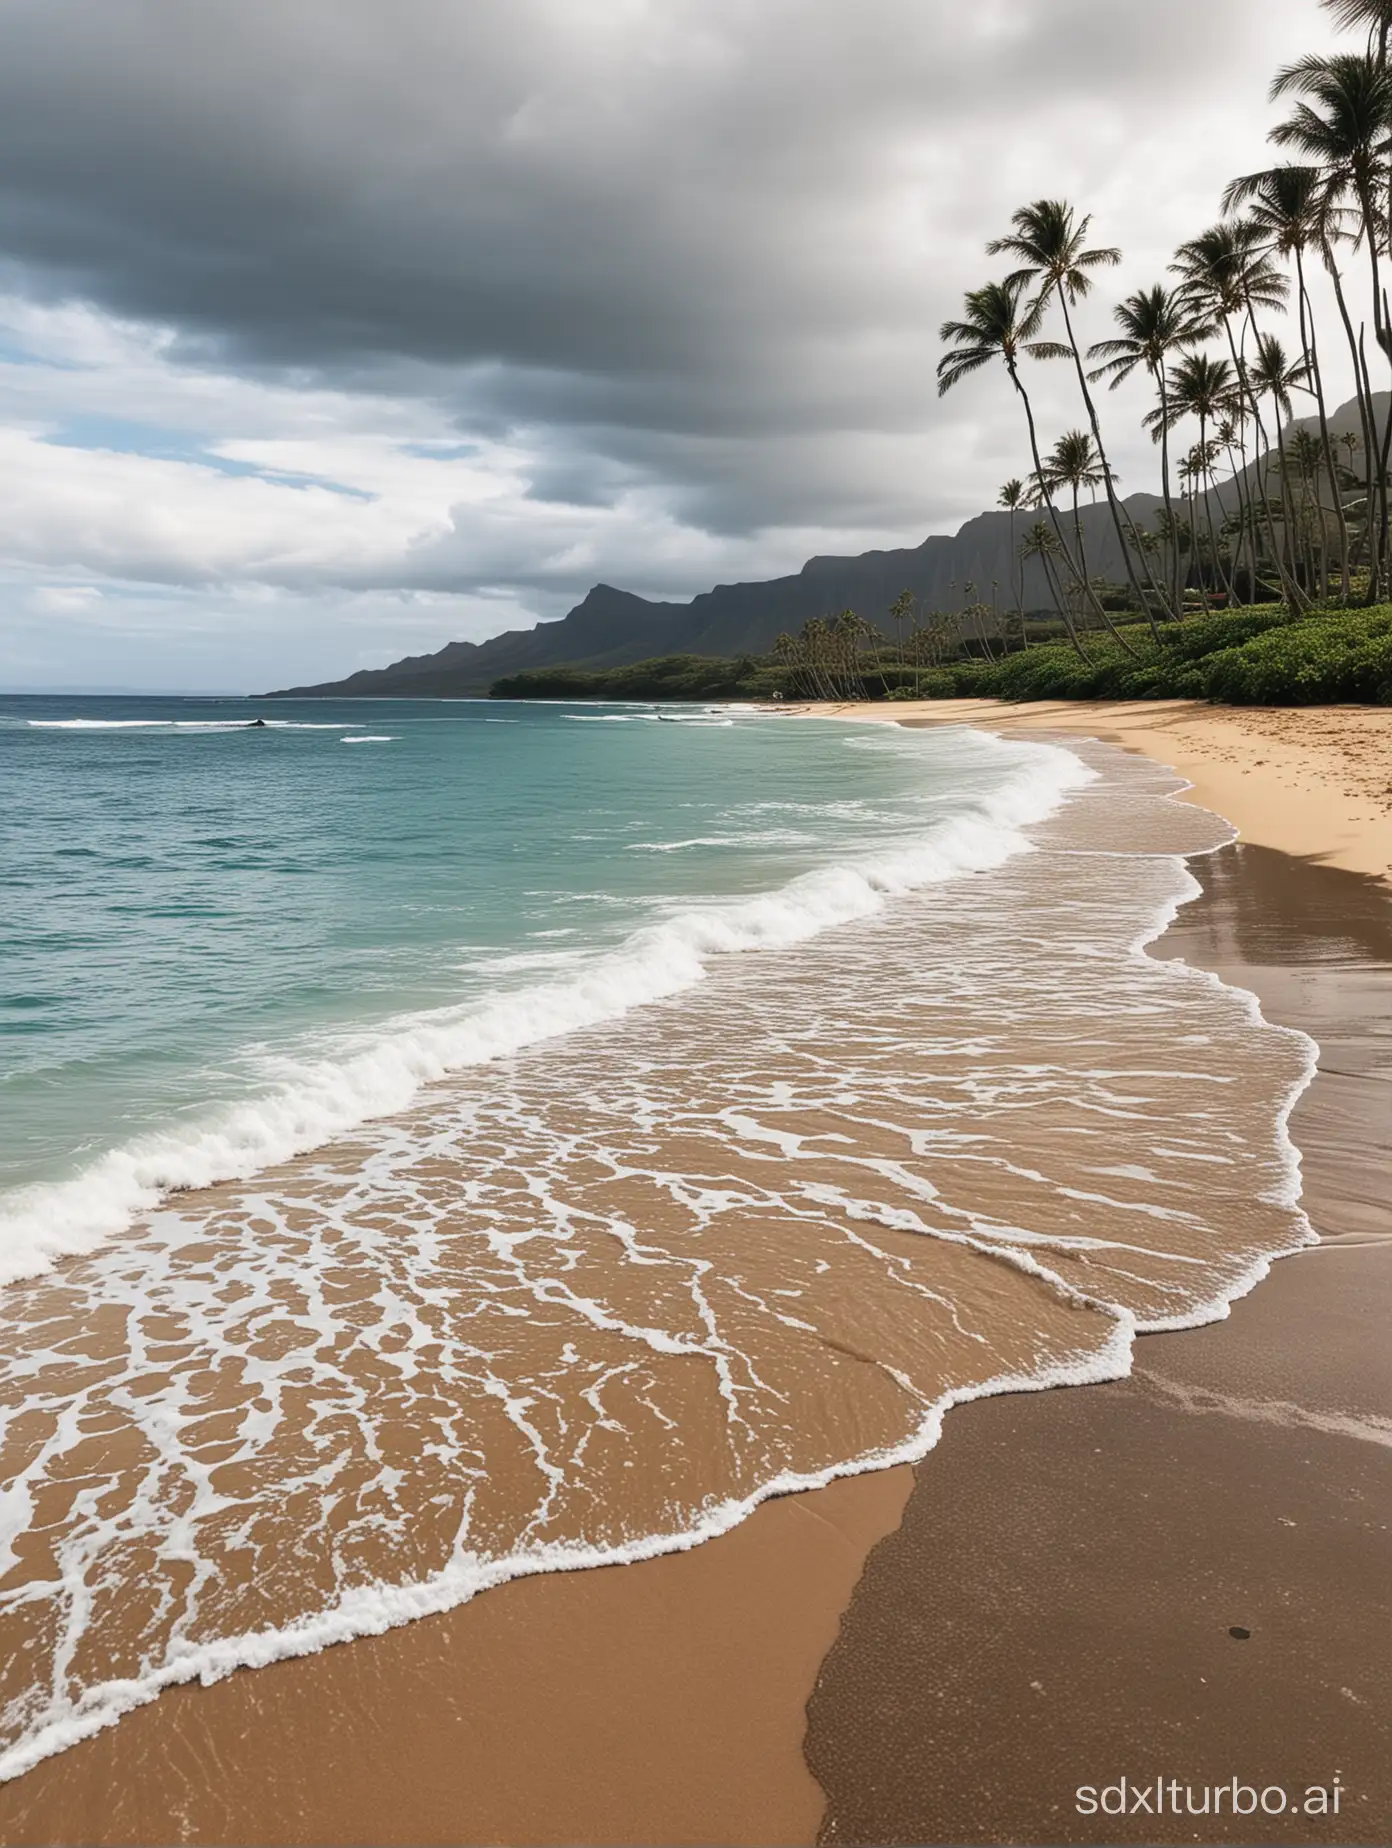 Hawaiian seaside